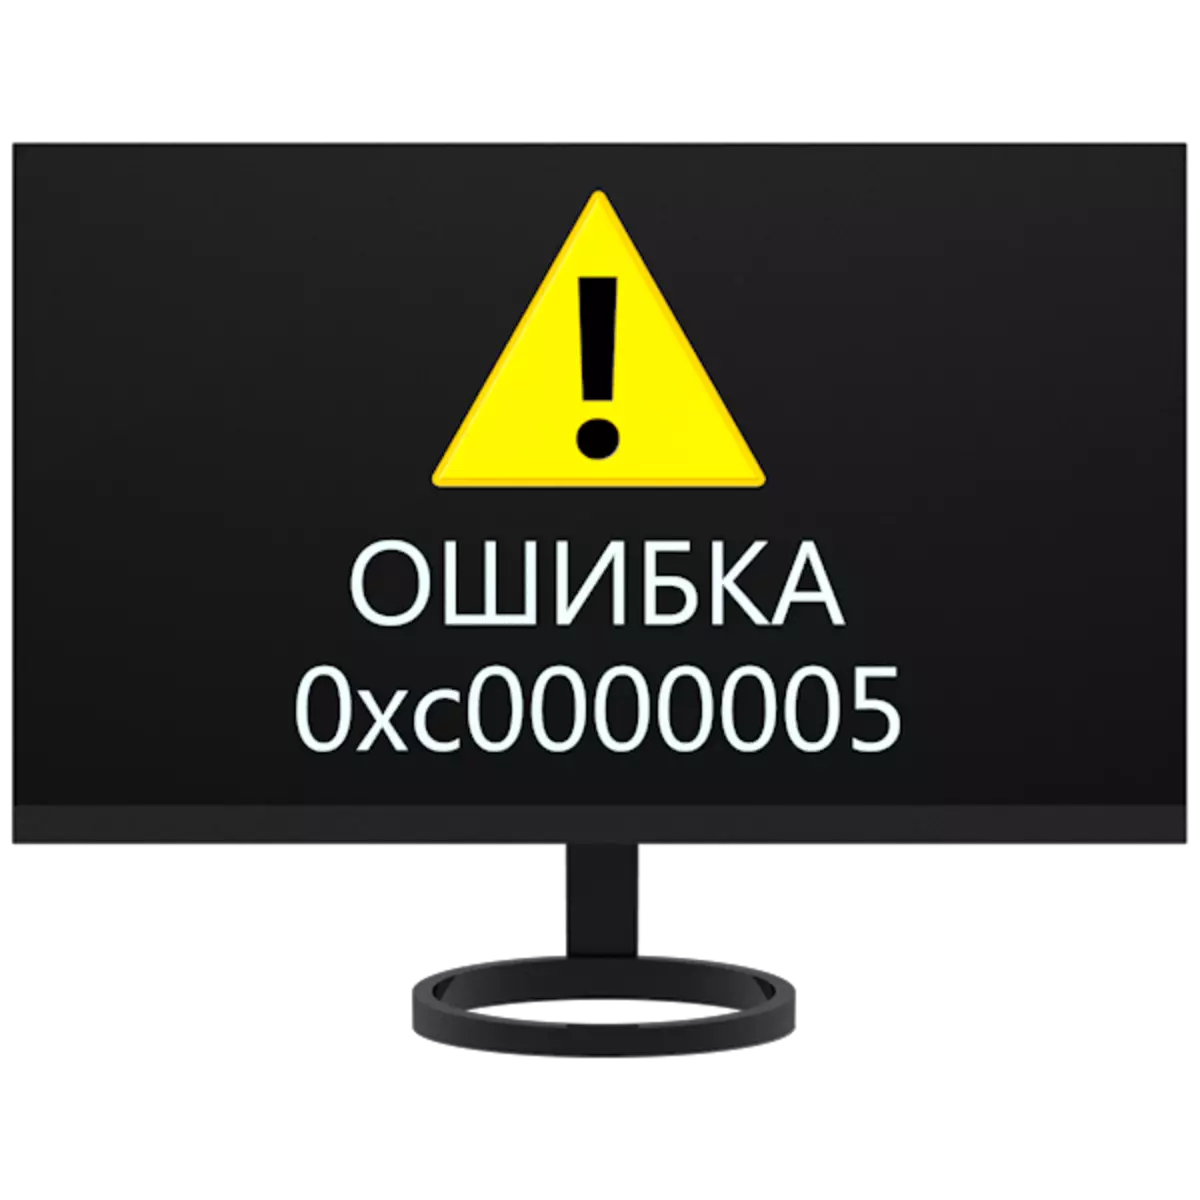 Windows 7中的纠错0xC0000005